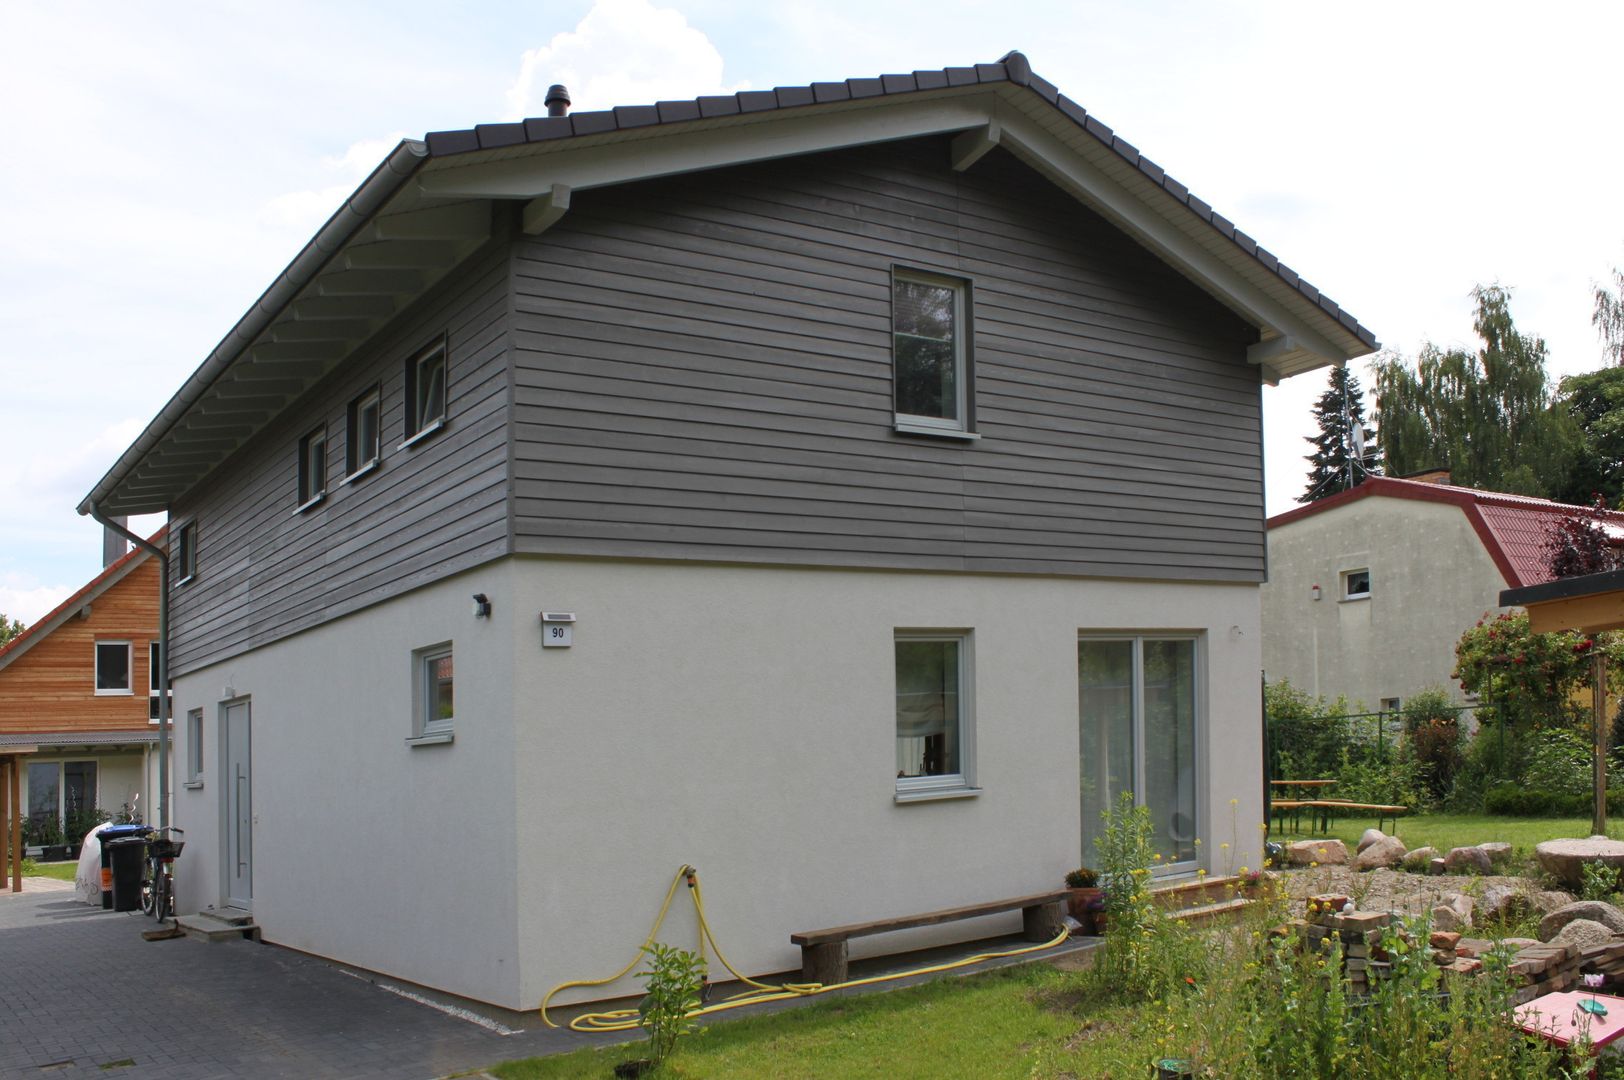 Wohngesundes Holzhaus - modern und kostengünstig, Neues Gesundes Bauen Neues Gesundes Bauen Modern Evler